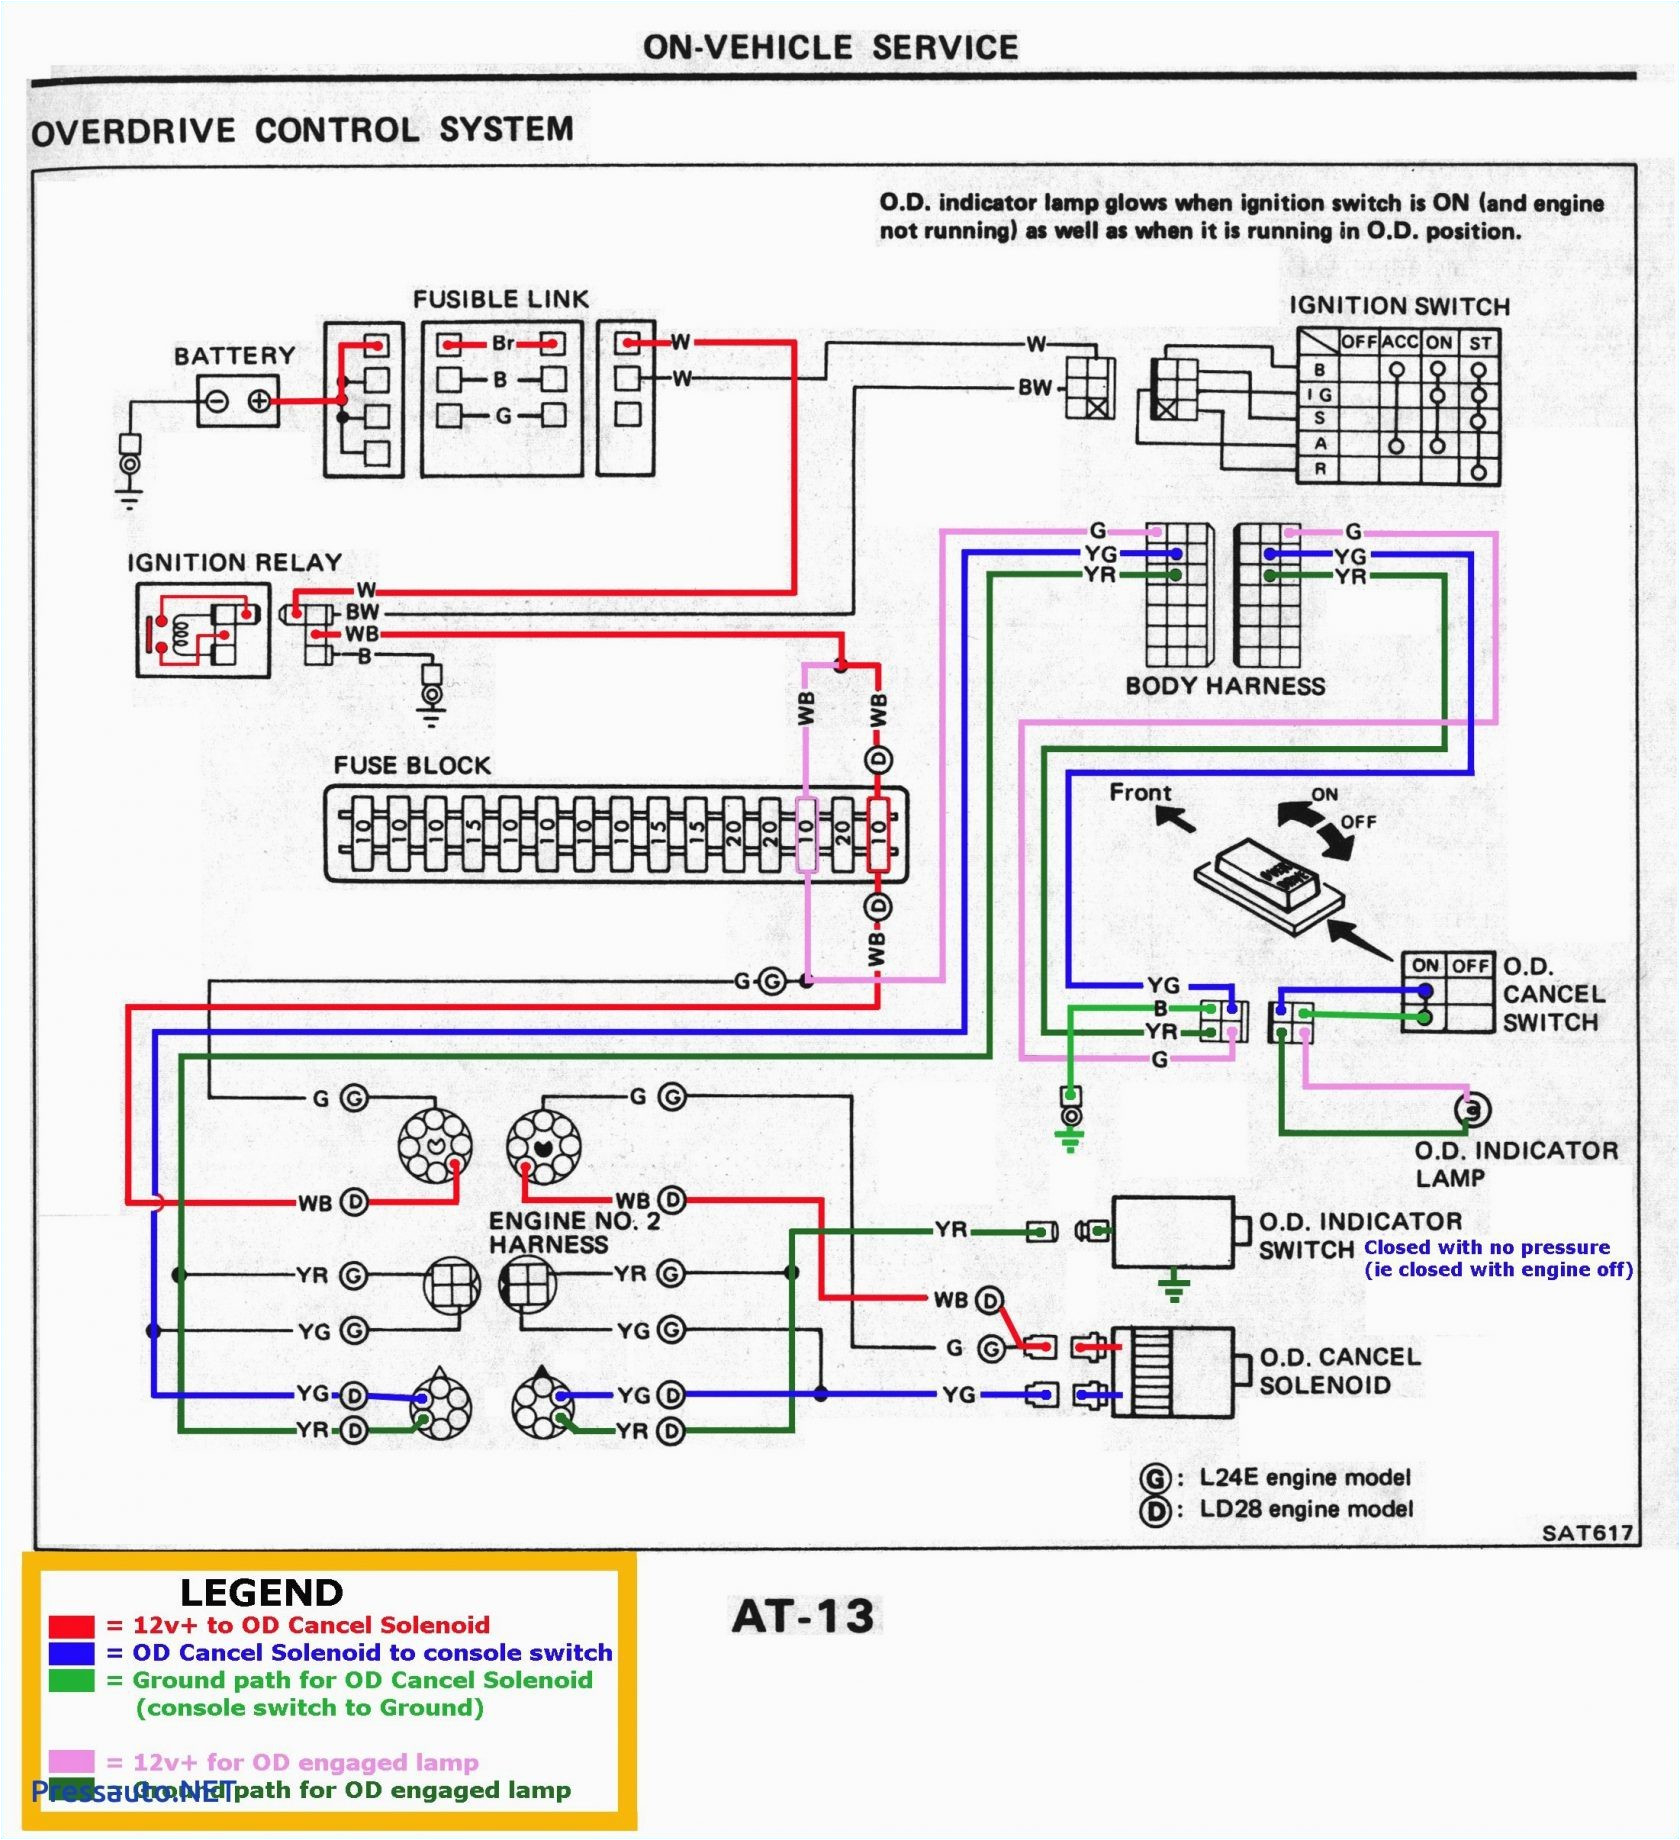 logic 7 wiring diagram wiring diagram name e90 logic 7 wiring diagram